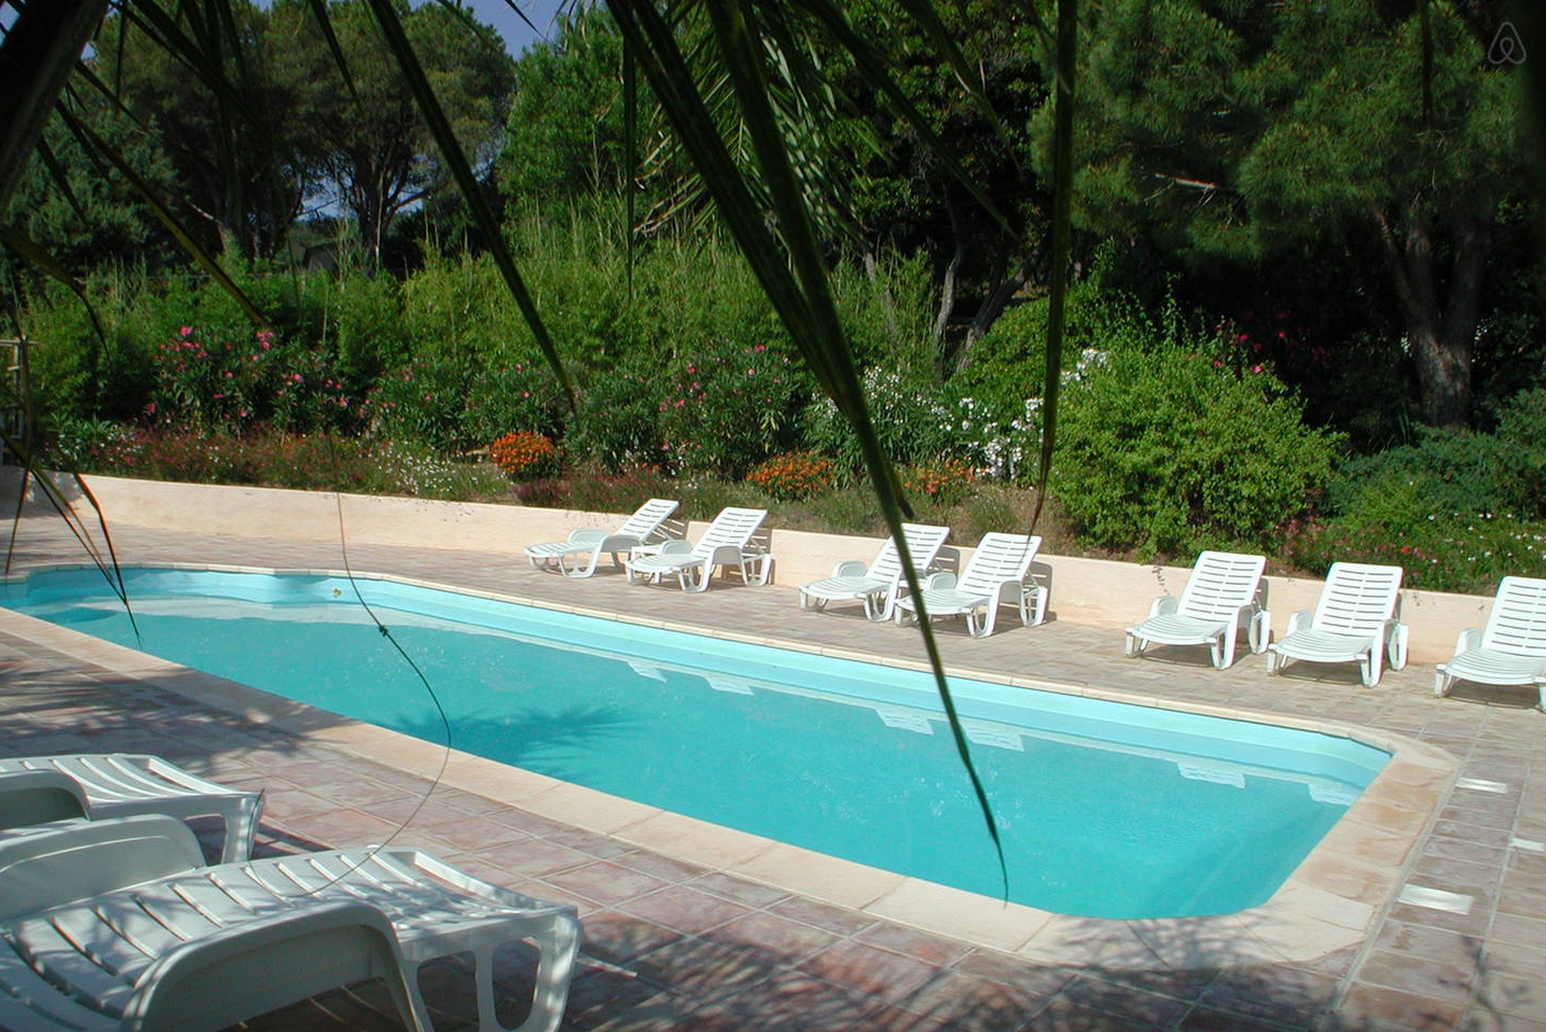 Villa de vacances à Cavalaire-sur-mer sur la côte d'azur loué via Airbnb